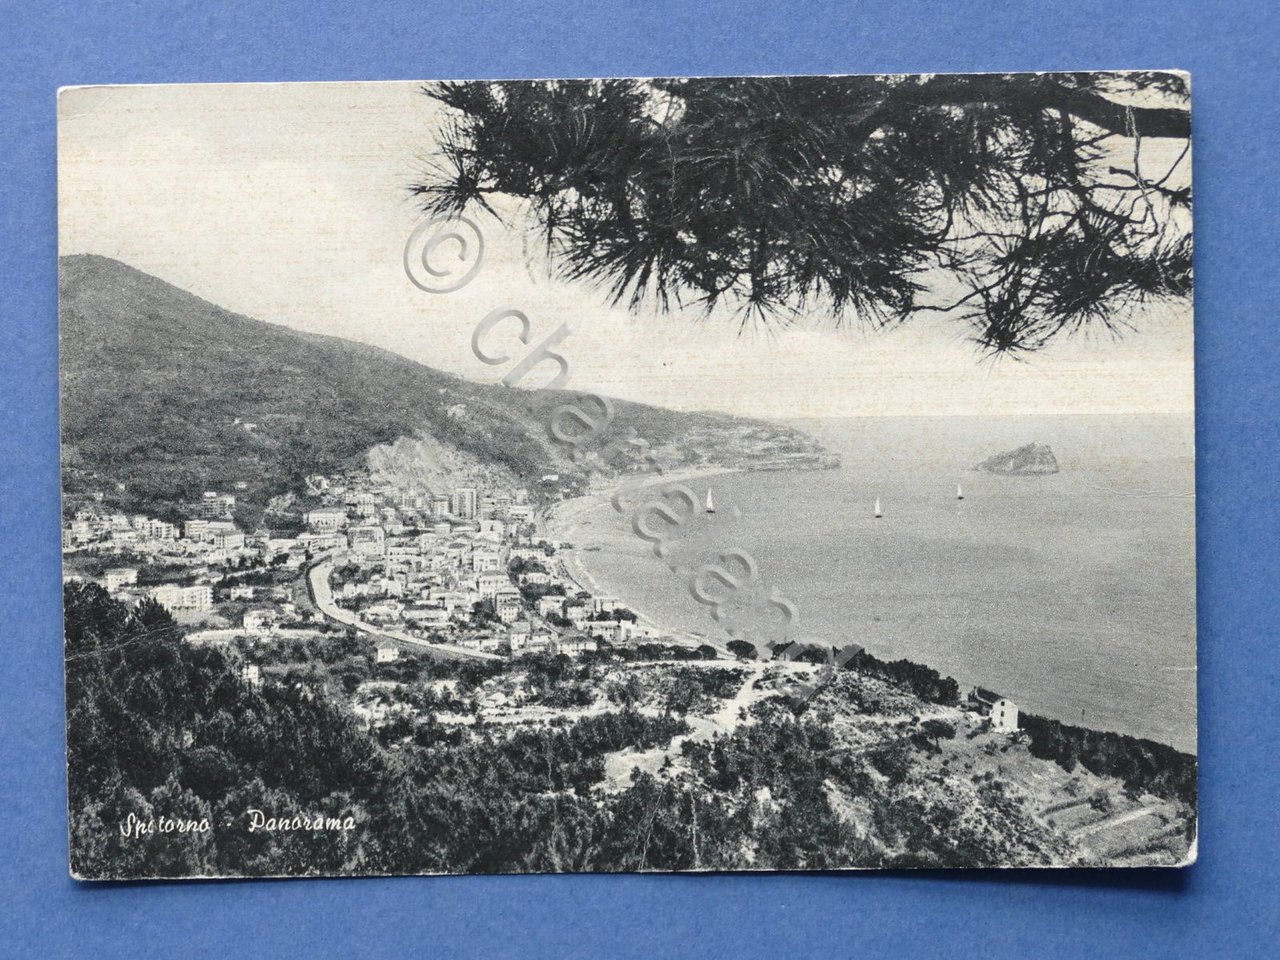 Cartolina Spotorno - Panorama - 1966.